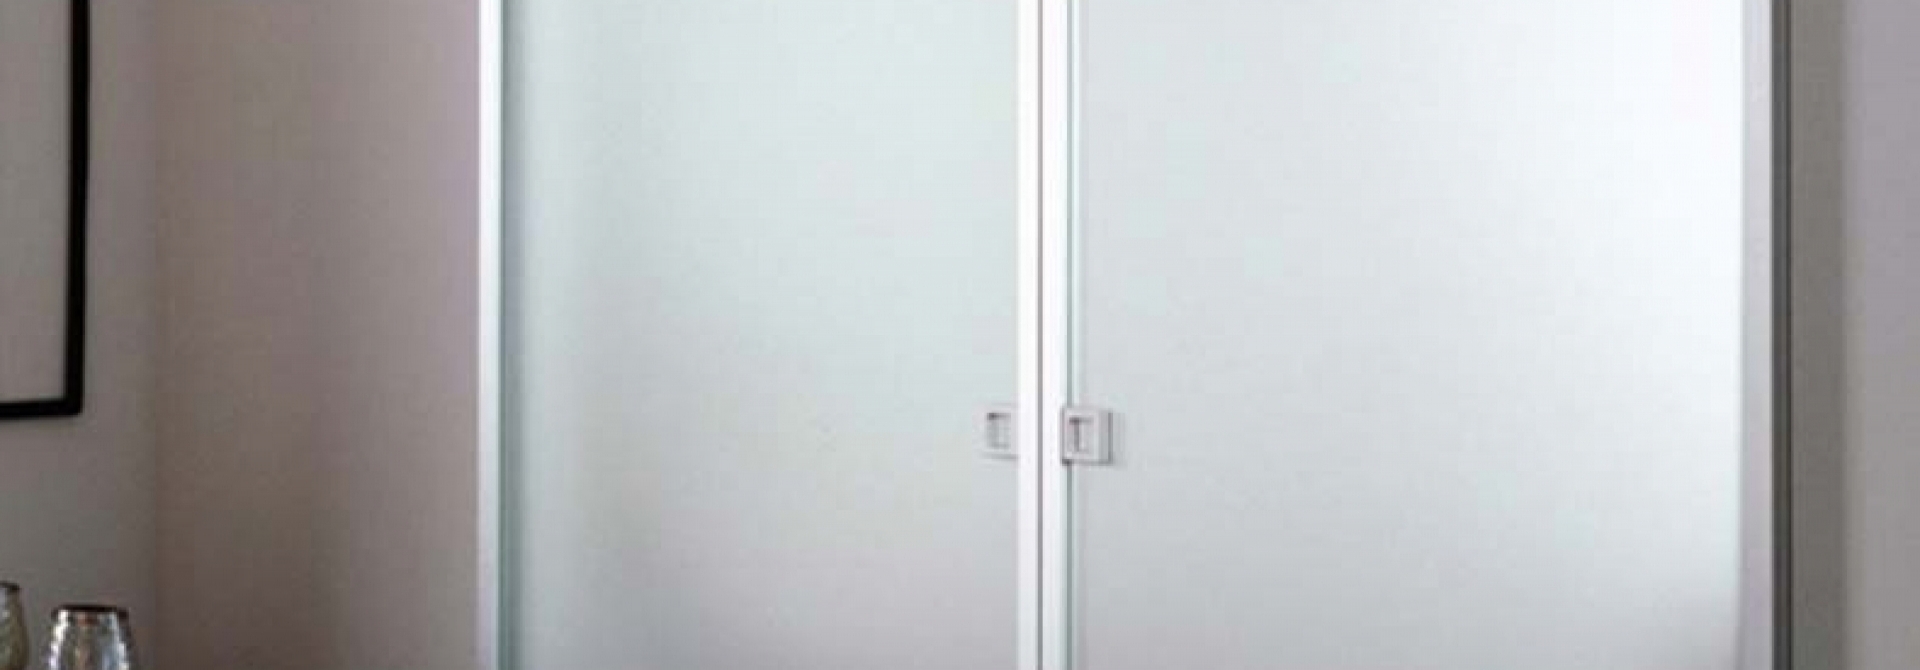 Porte Alluminio-Vetro Bologna, Porte in Alluminio-Vetro su misura